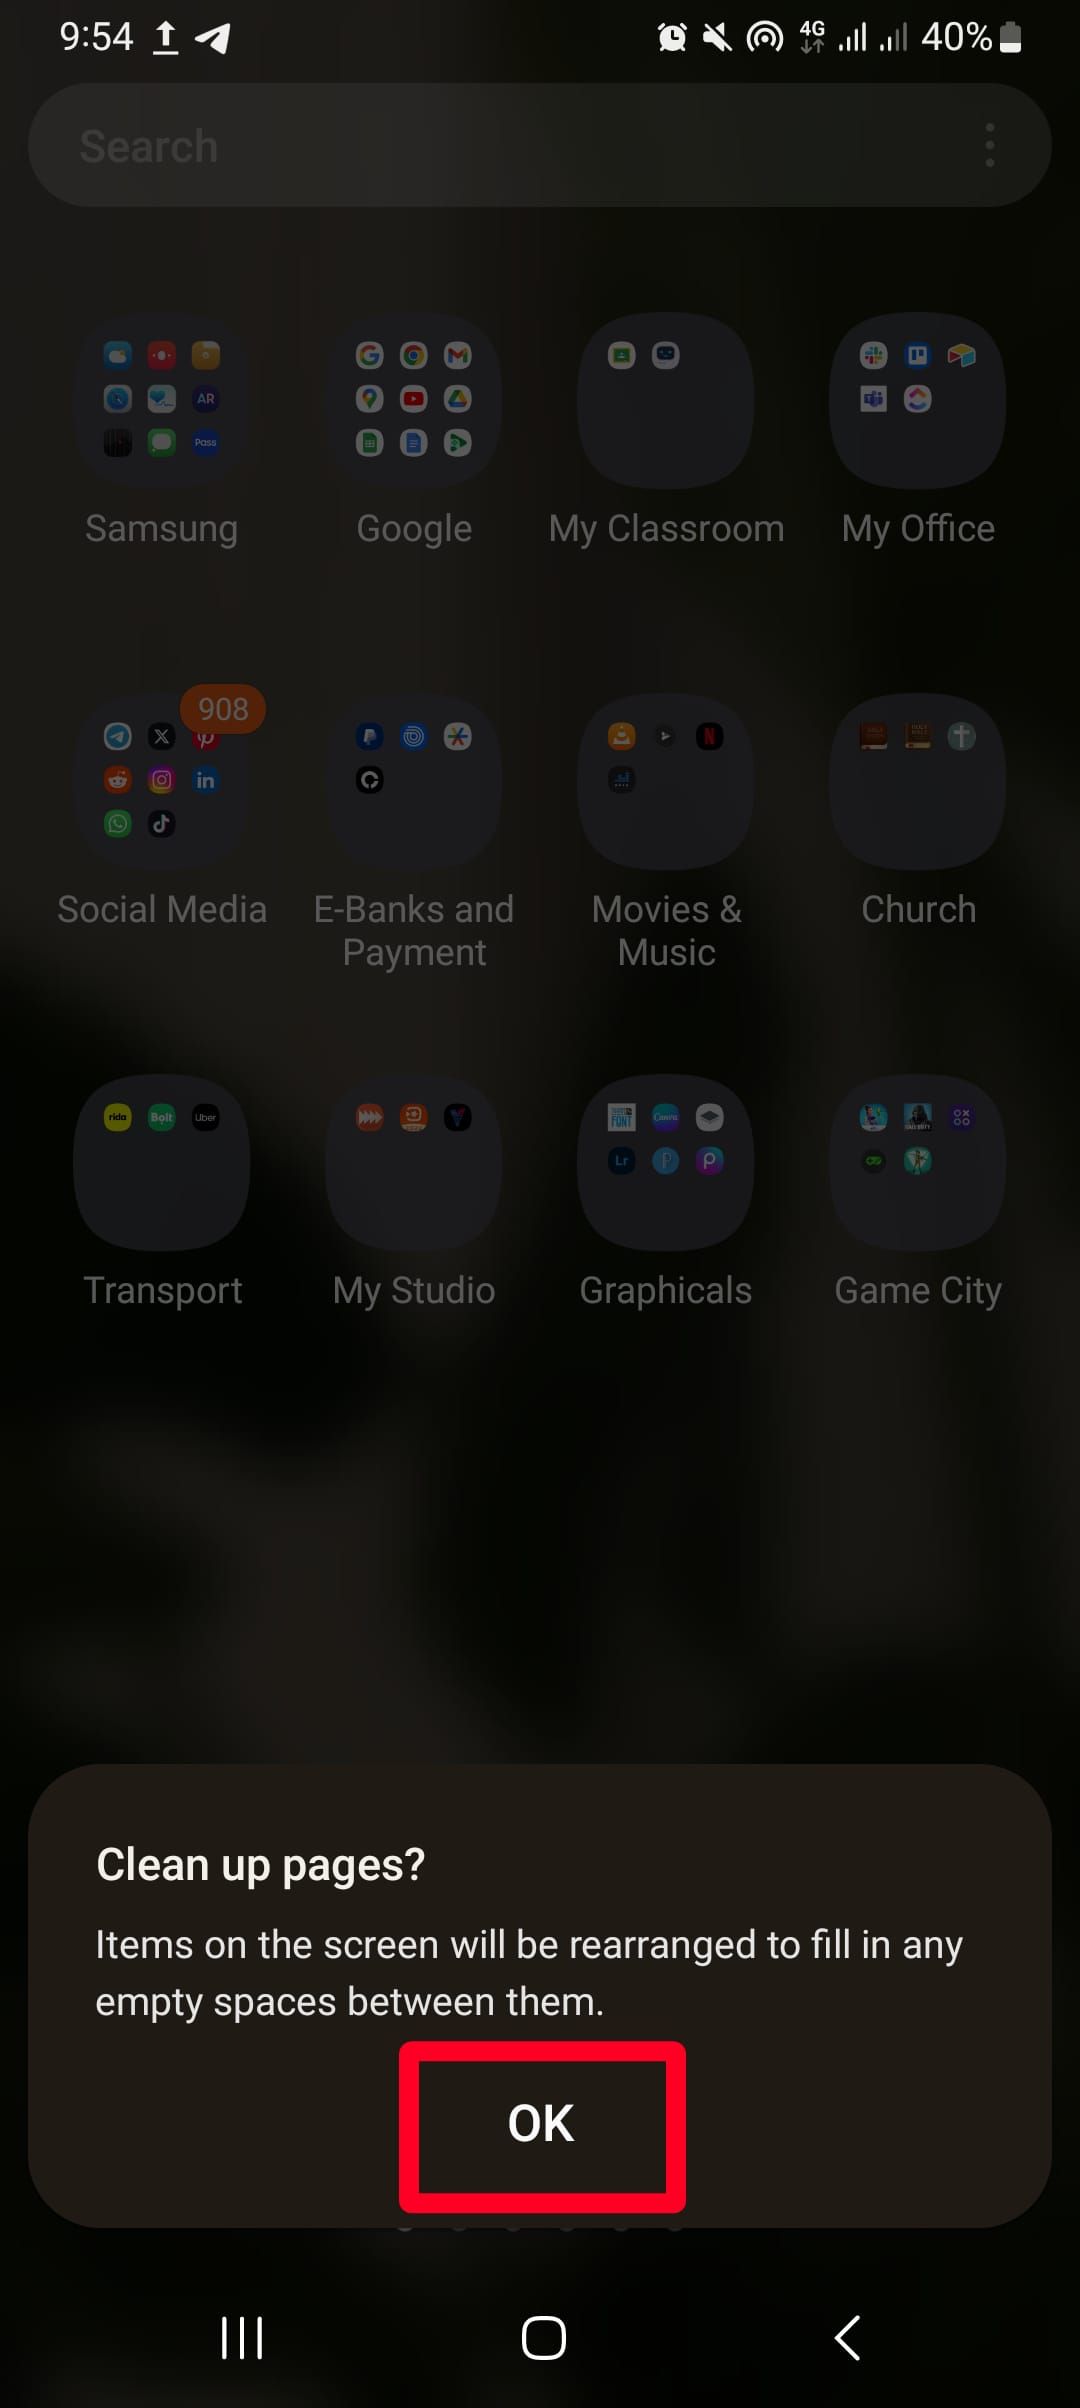 Mensagem de confirmação de limpeza de páginas na tela de aplicativos do Android.